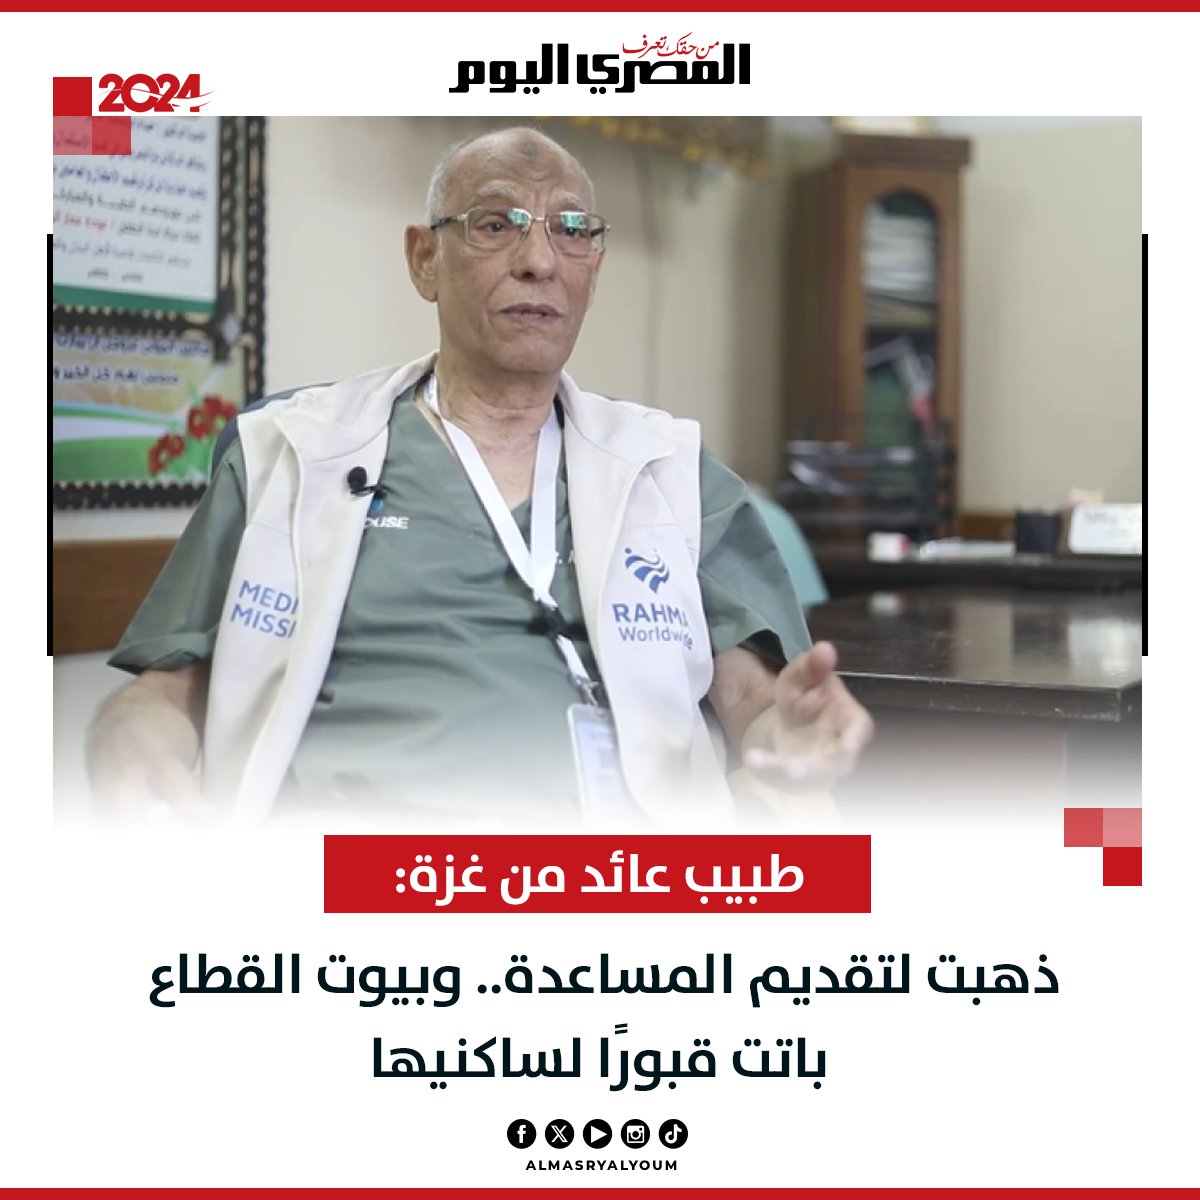 طبيب عائد من غزة: ذهبت لتقديم المساعدة.. وبيوت القطاع باتت قبورًا لساكنيها (فيديو) bityl.co/PiOt